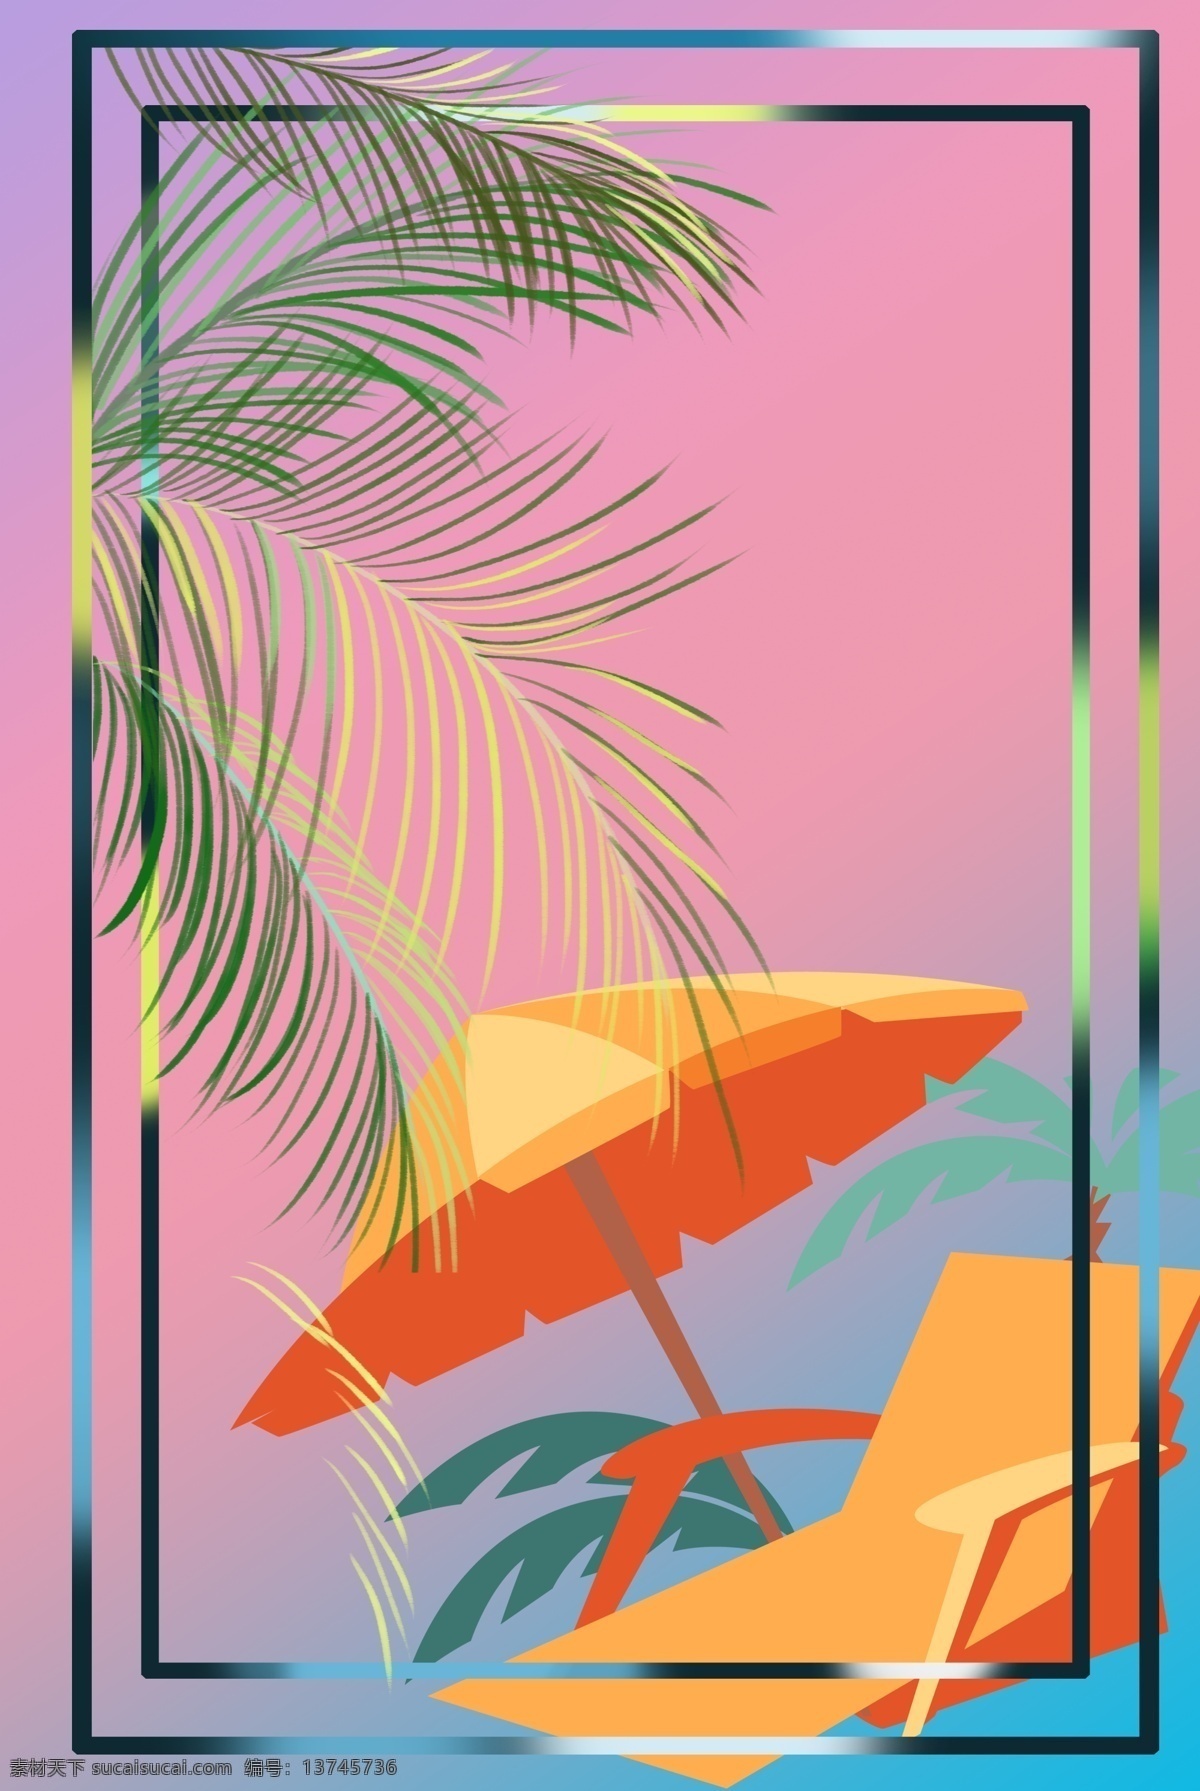 夏日 夏威夷 海报 背景 图 背景图 渐变 躺椅 边框 线条